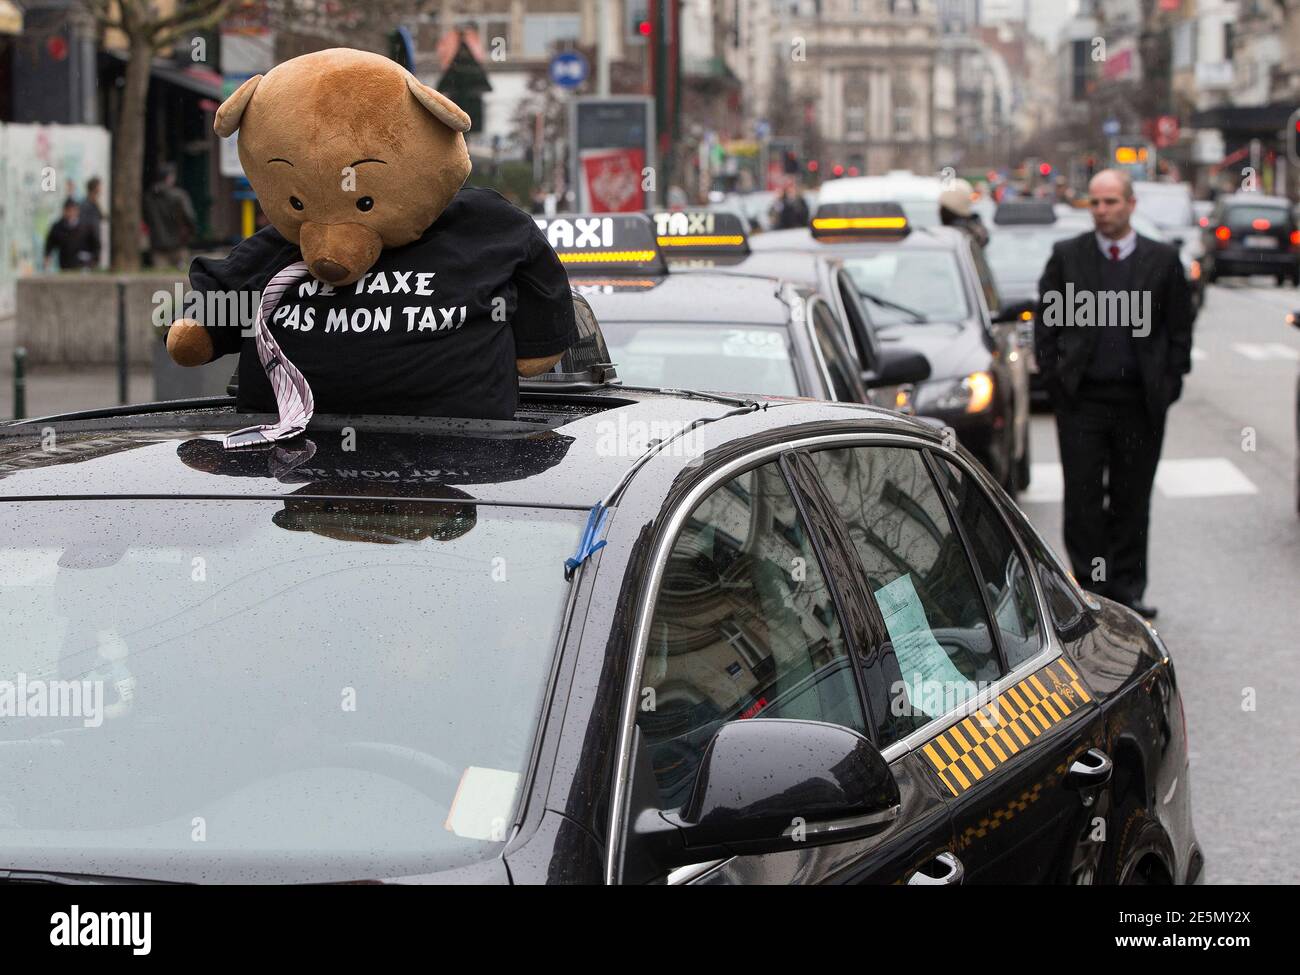 Un osito de peluche con una camiseta que dice "no gravar mi taxi" se ve  durante una protesta contra la compañía de viajes compartidos en línea Uber,  en el centro de Bruselas,